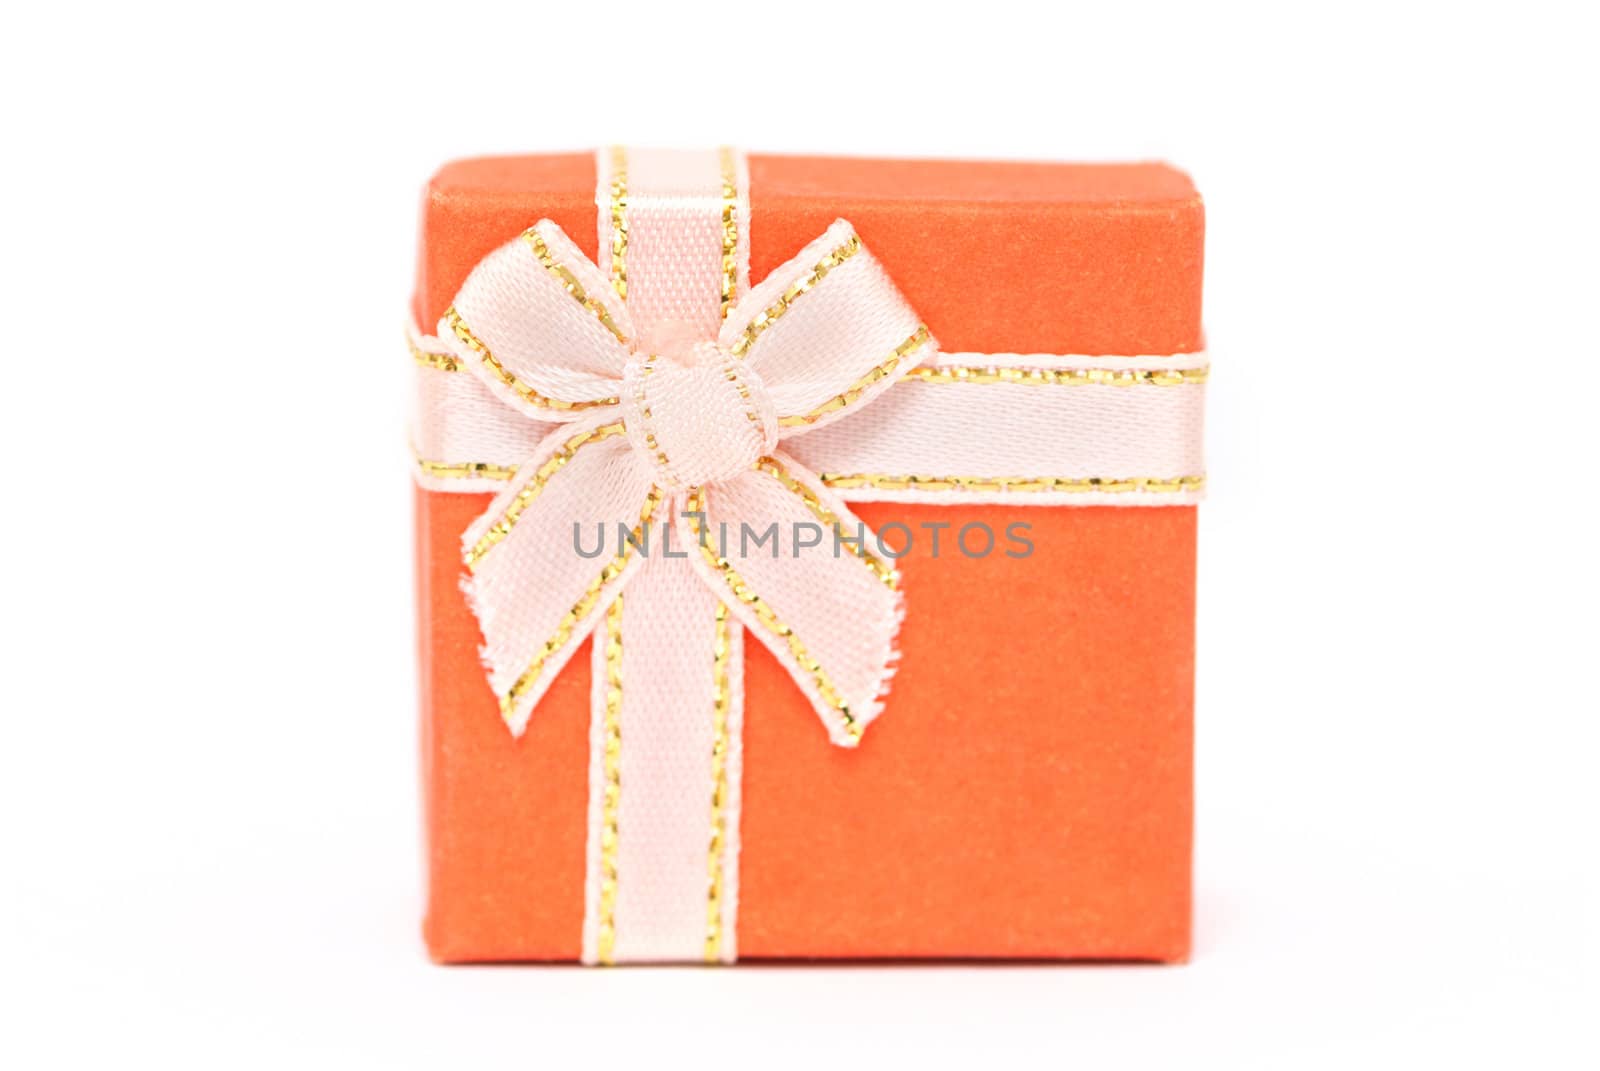 Orange gift box by Olinkau